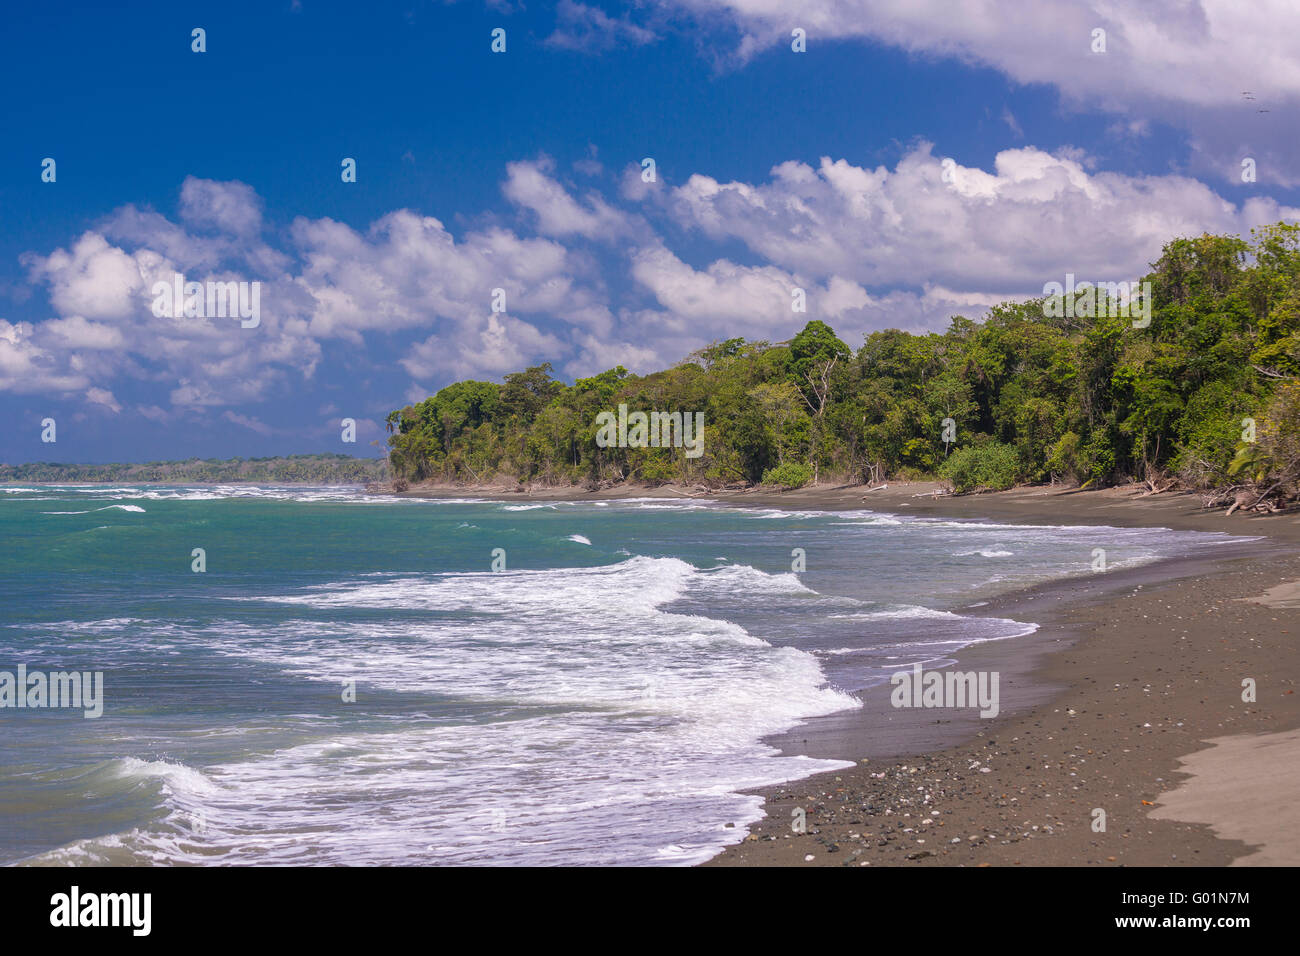 Parco nazionale di Corcovado, COSTA RICA - Spiaggia sull'Oceano Pacifico, osa penisola. Foto Stock